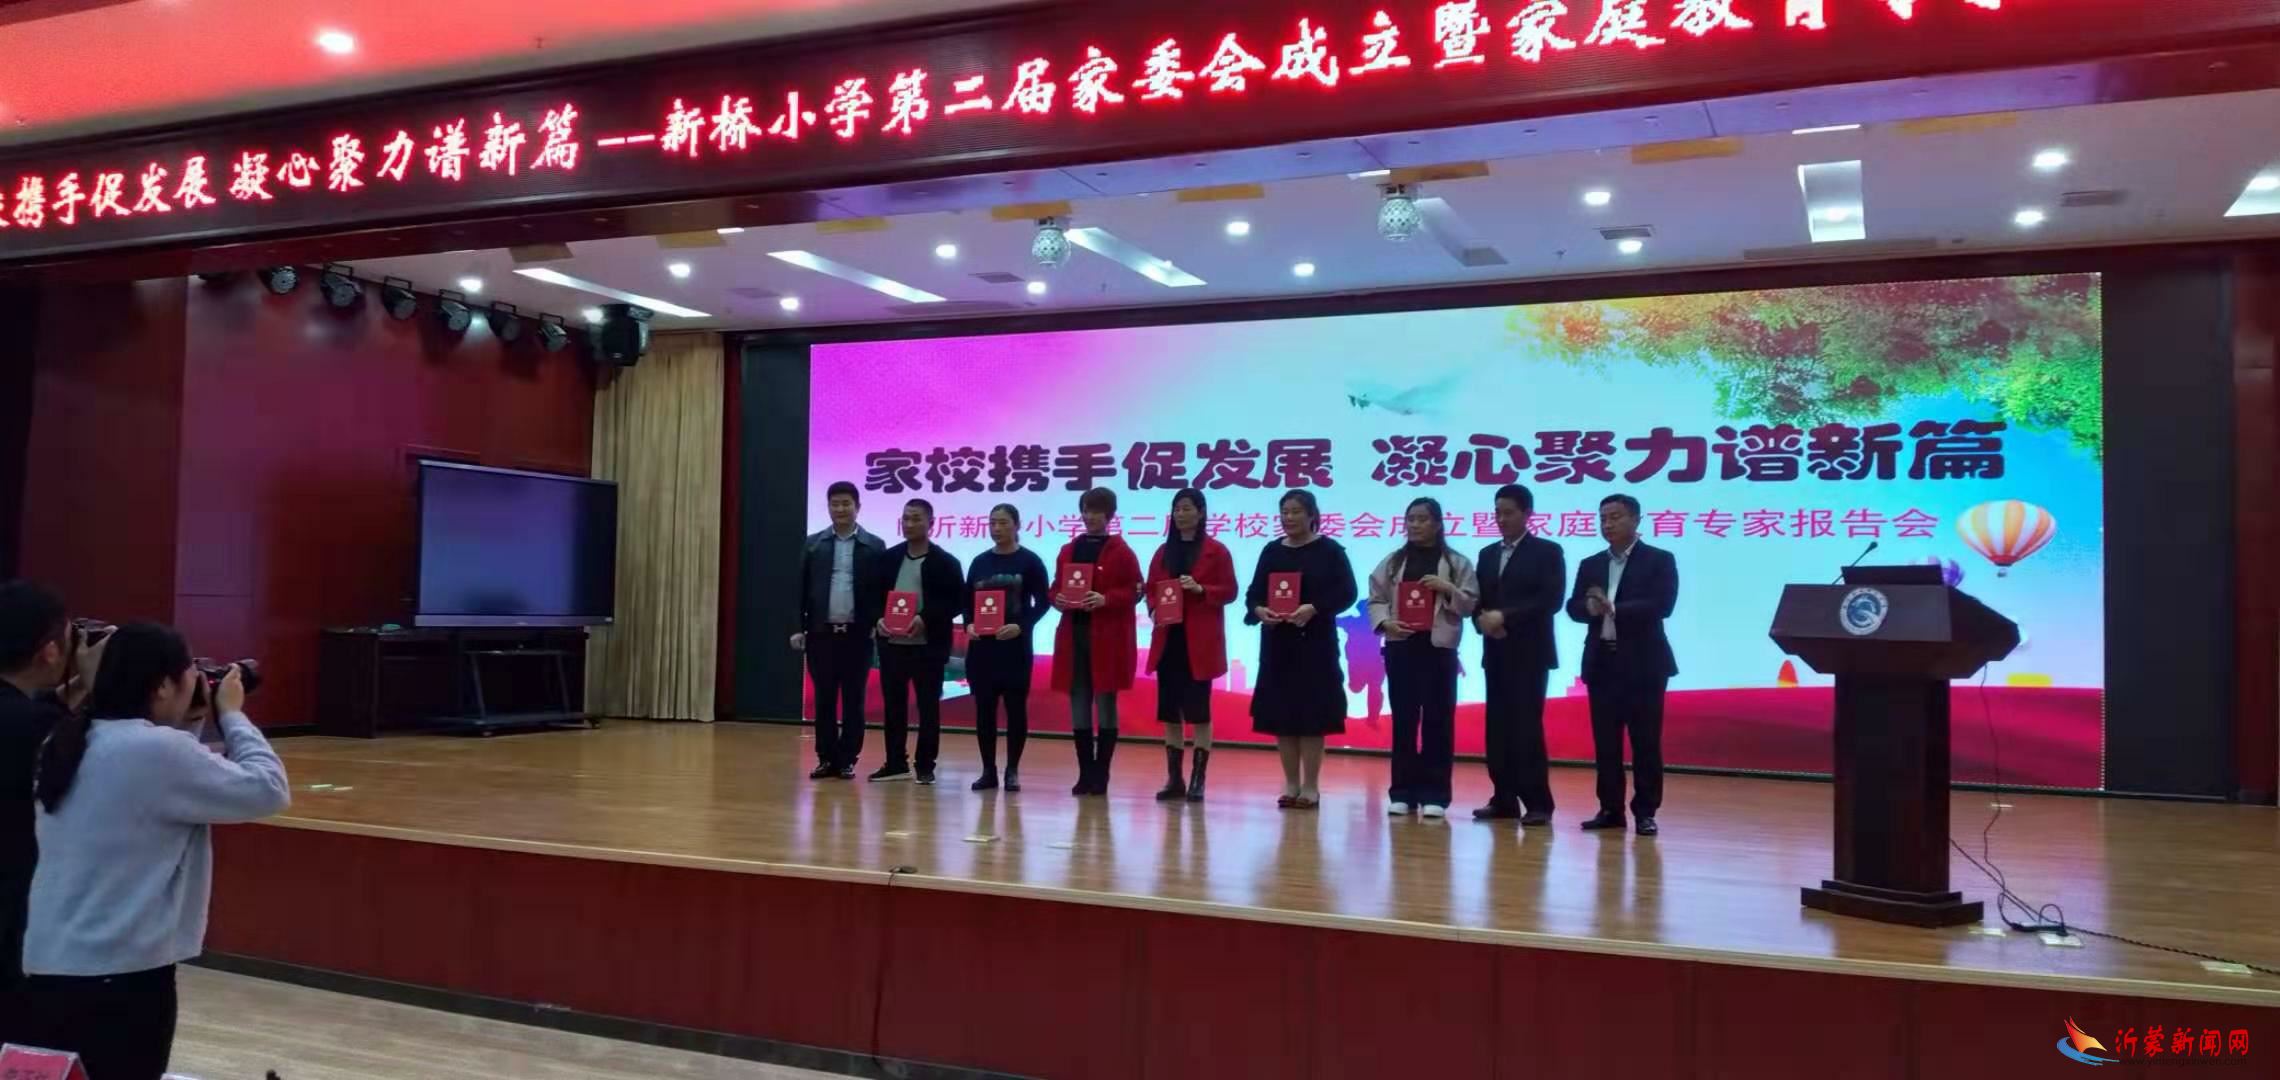 临沂新桥小学举行第二届家委会成立暨家庭教育专家报告会